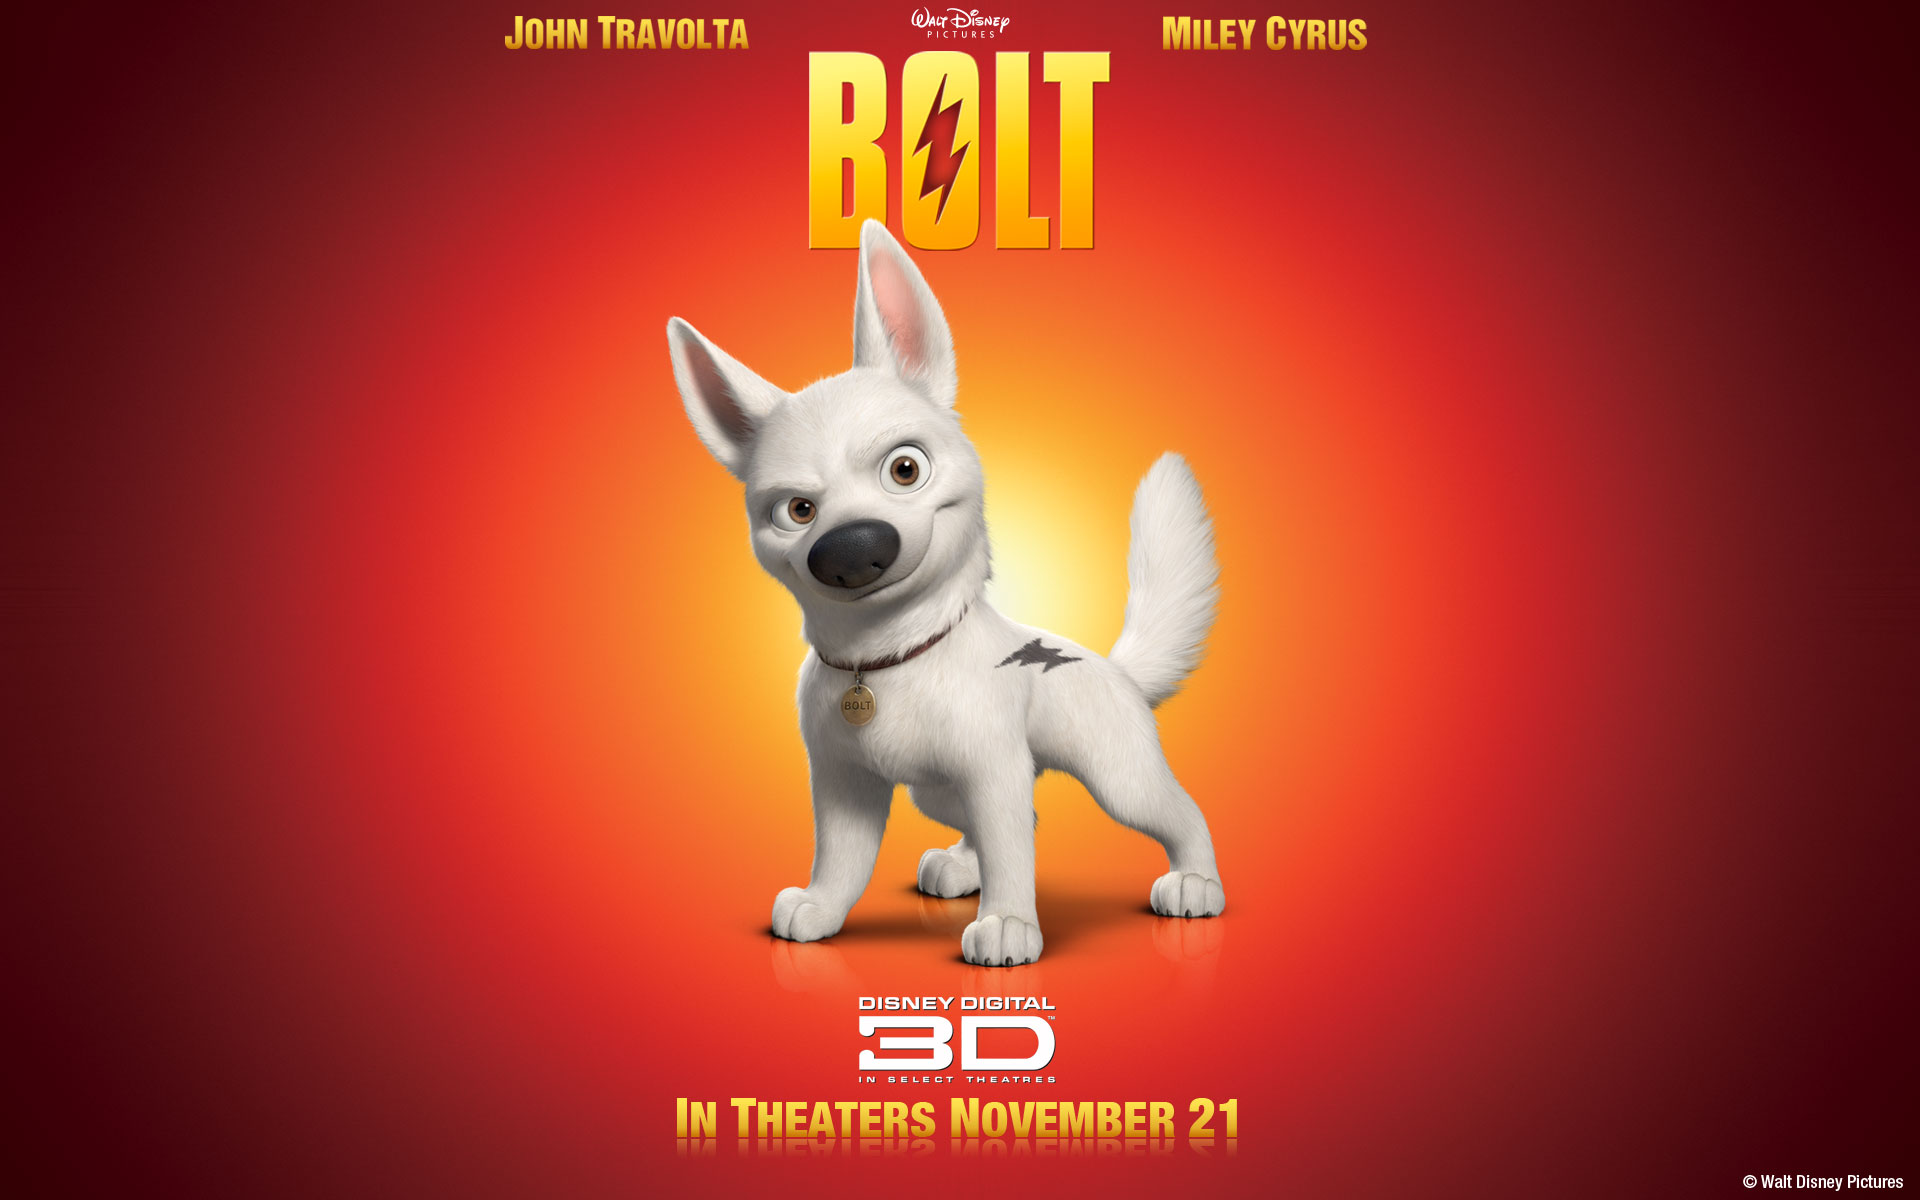 "Bolt" desktop wallpaper number 1 (1920 x 1200 pixels)